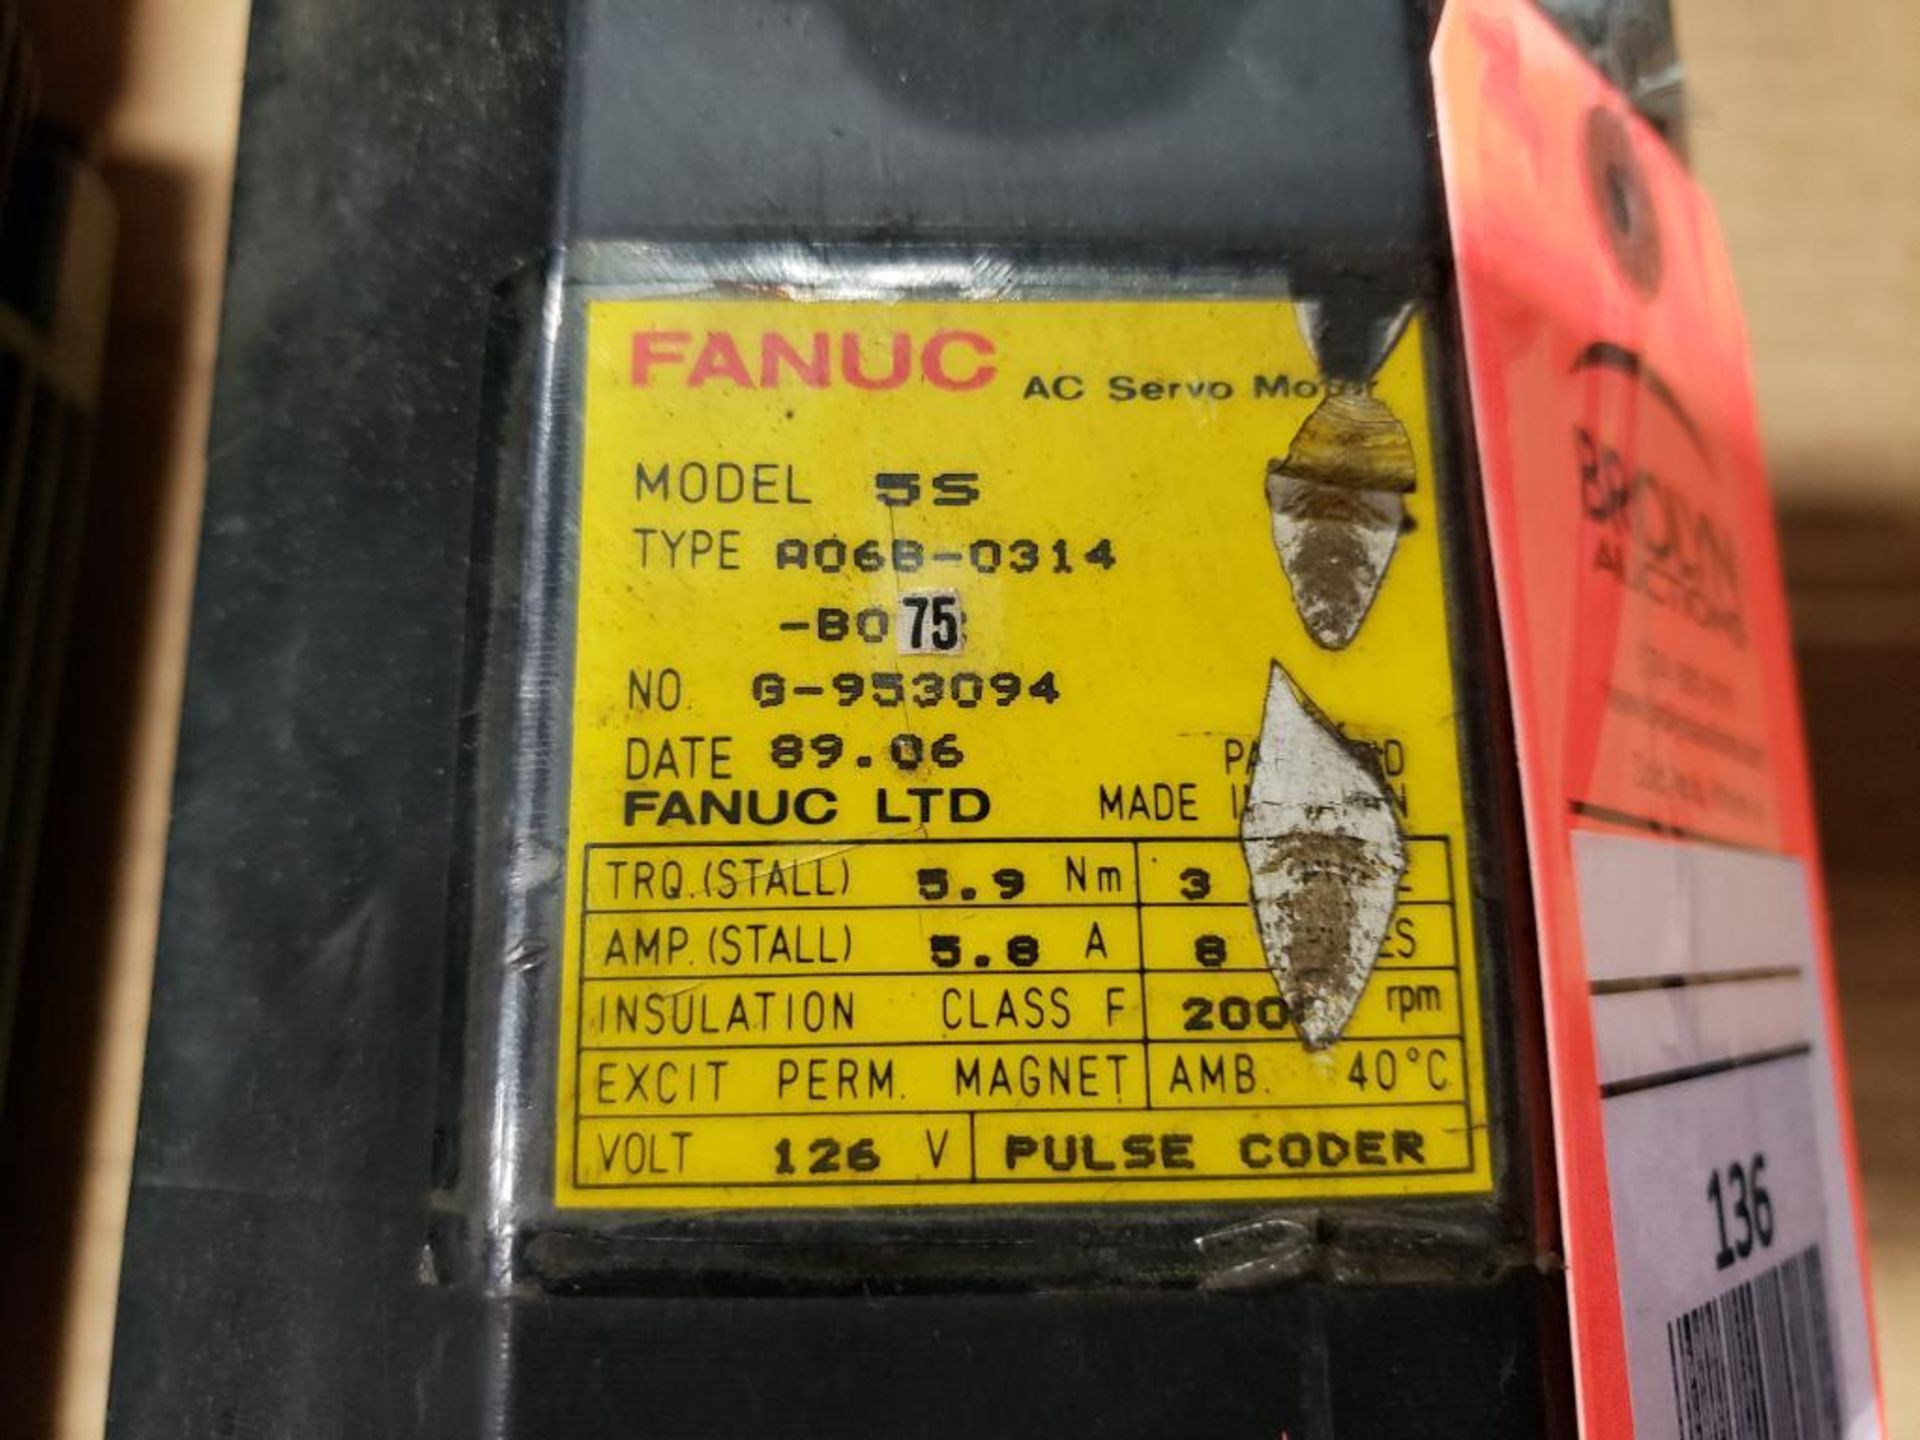 Fanuc AC Servo motor A06B-0314-B075. - Image 5 of 5